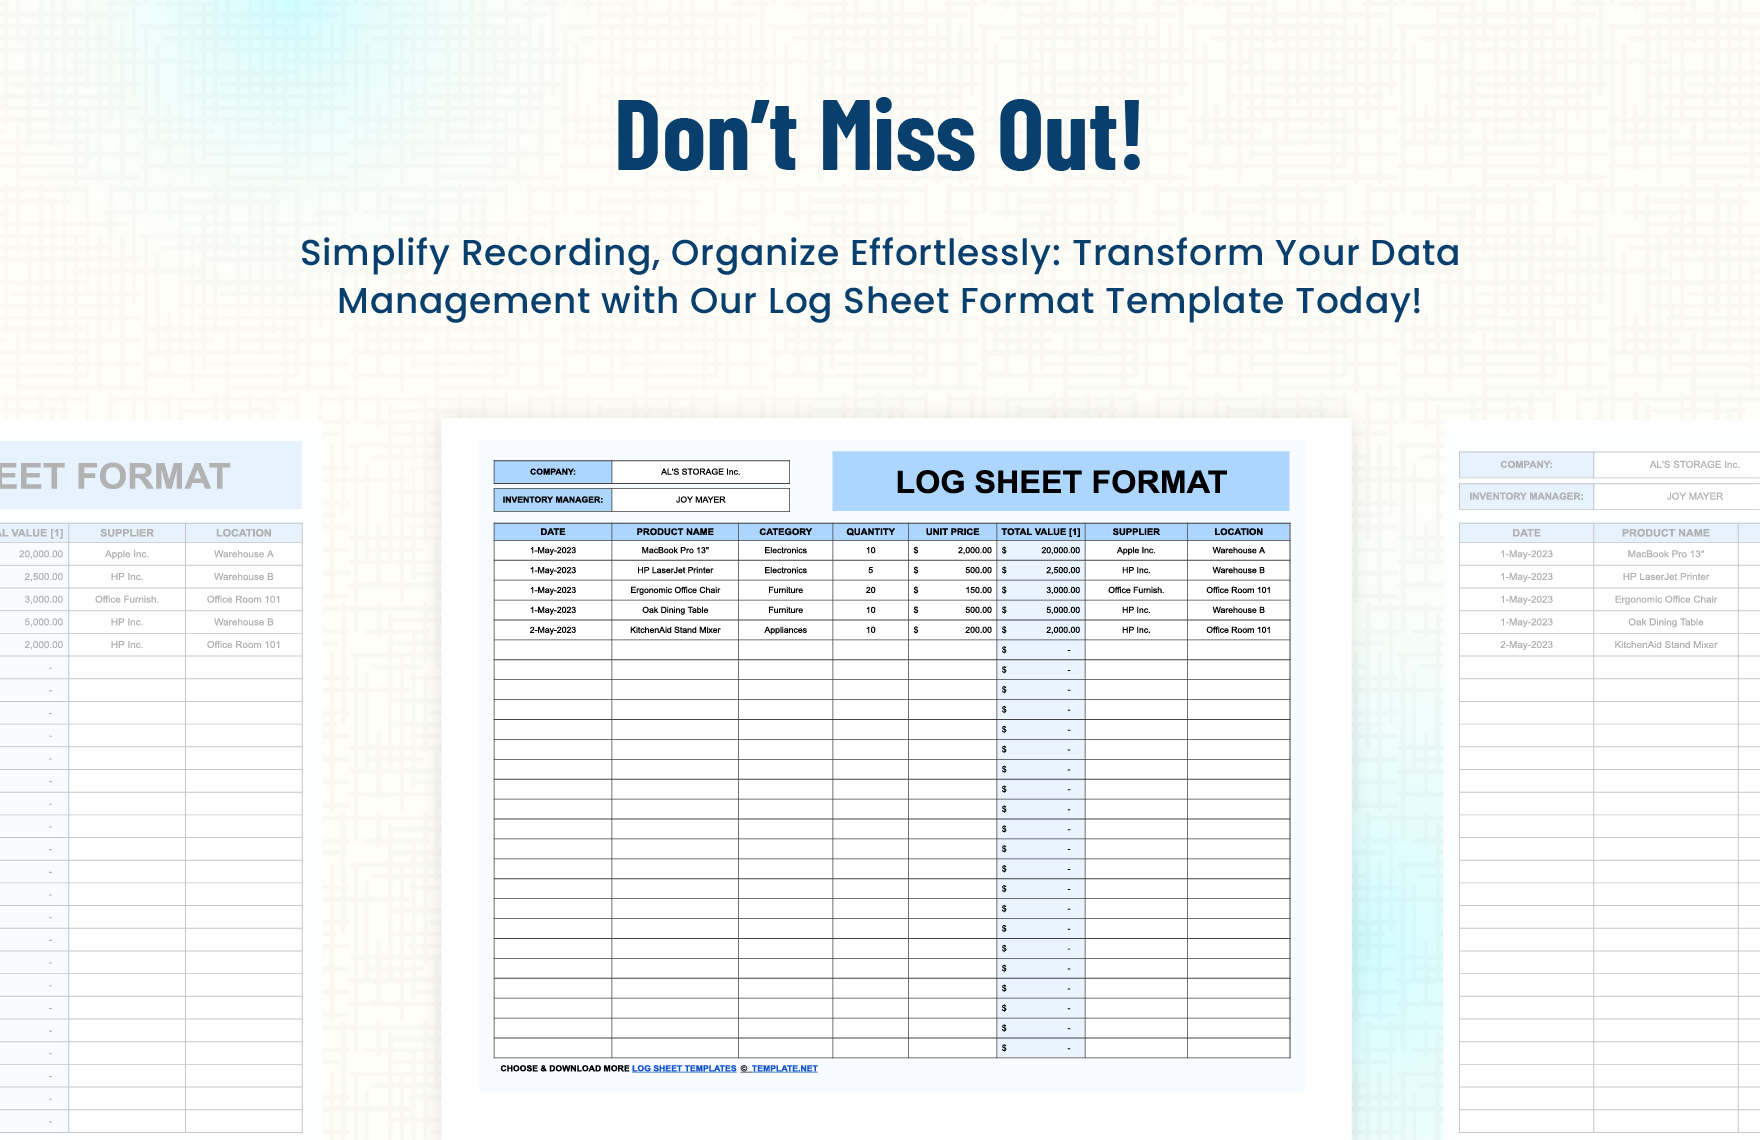 Log Sheet Format Template